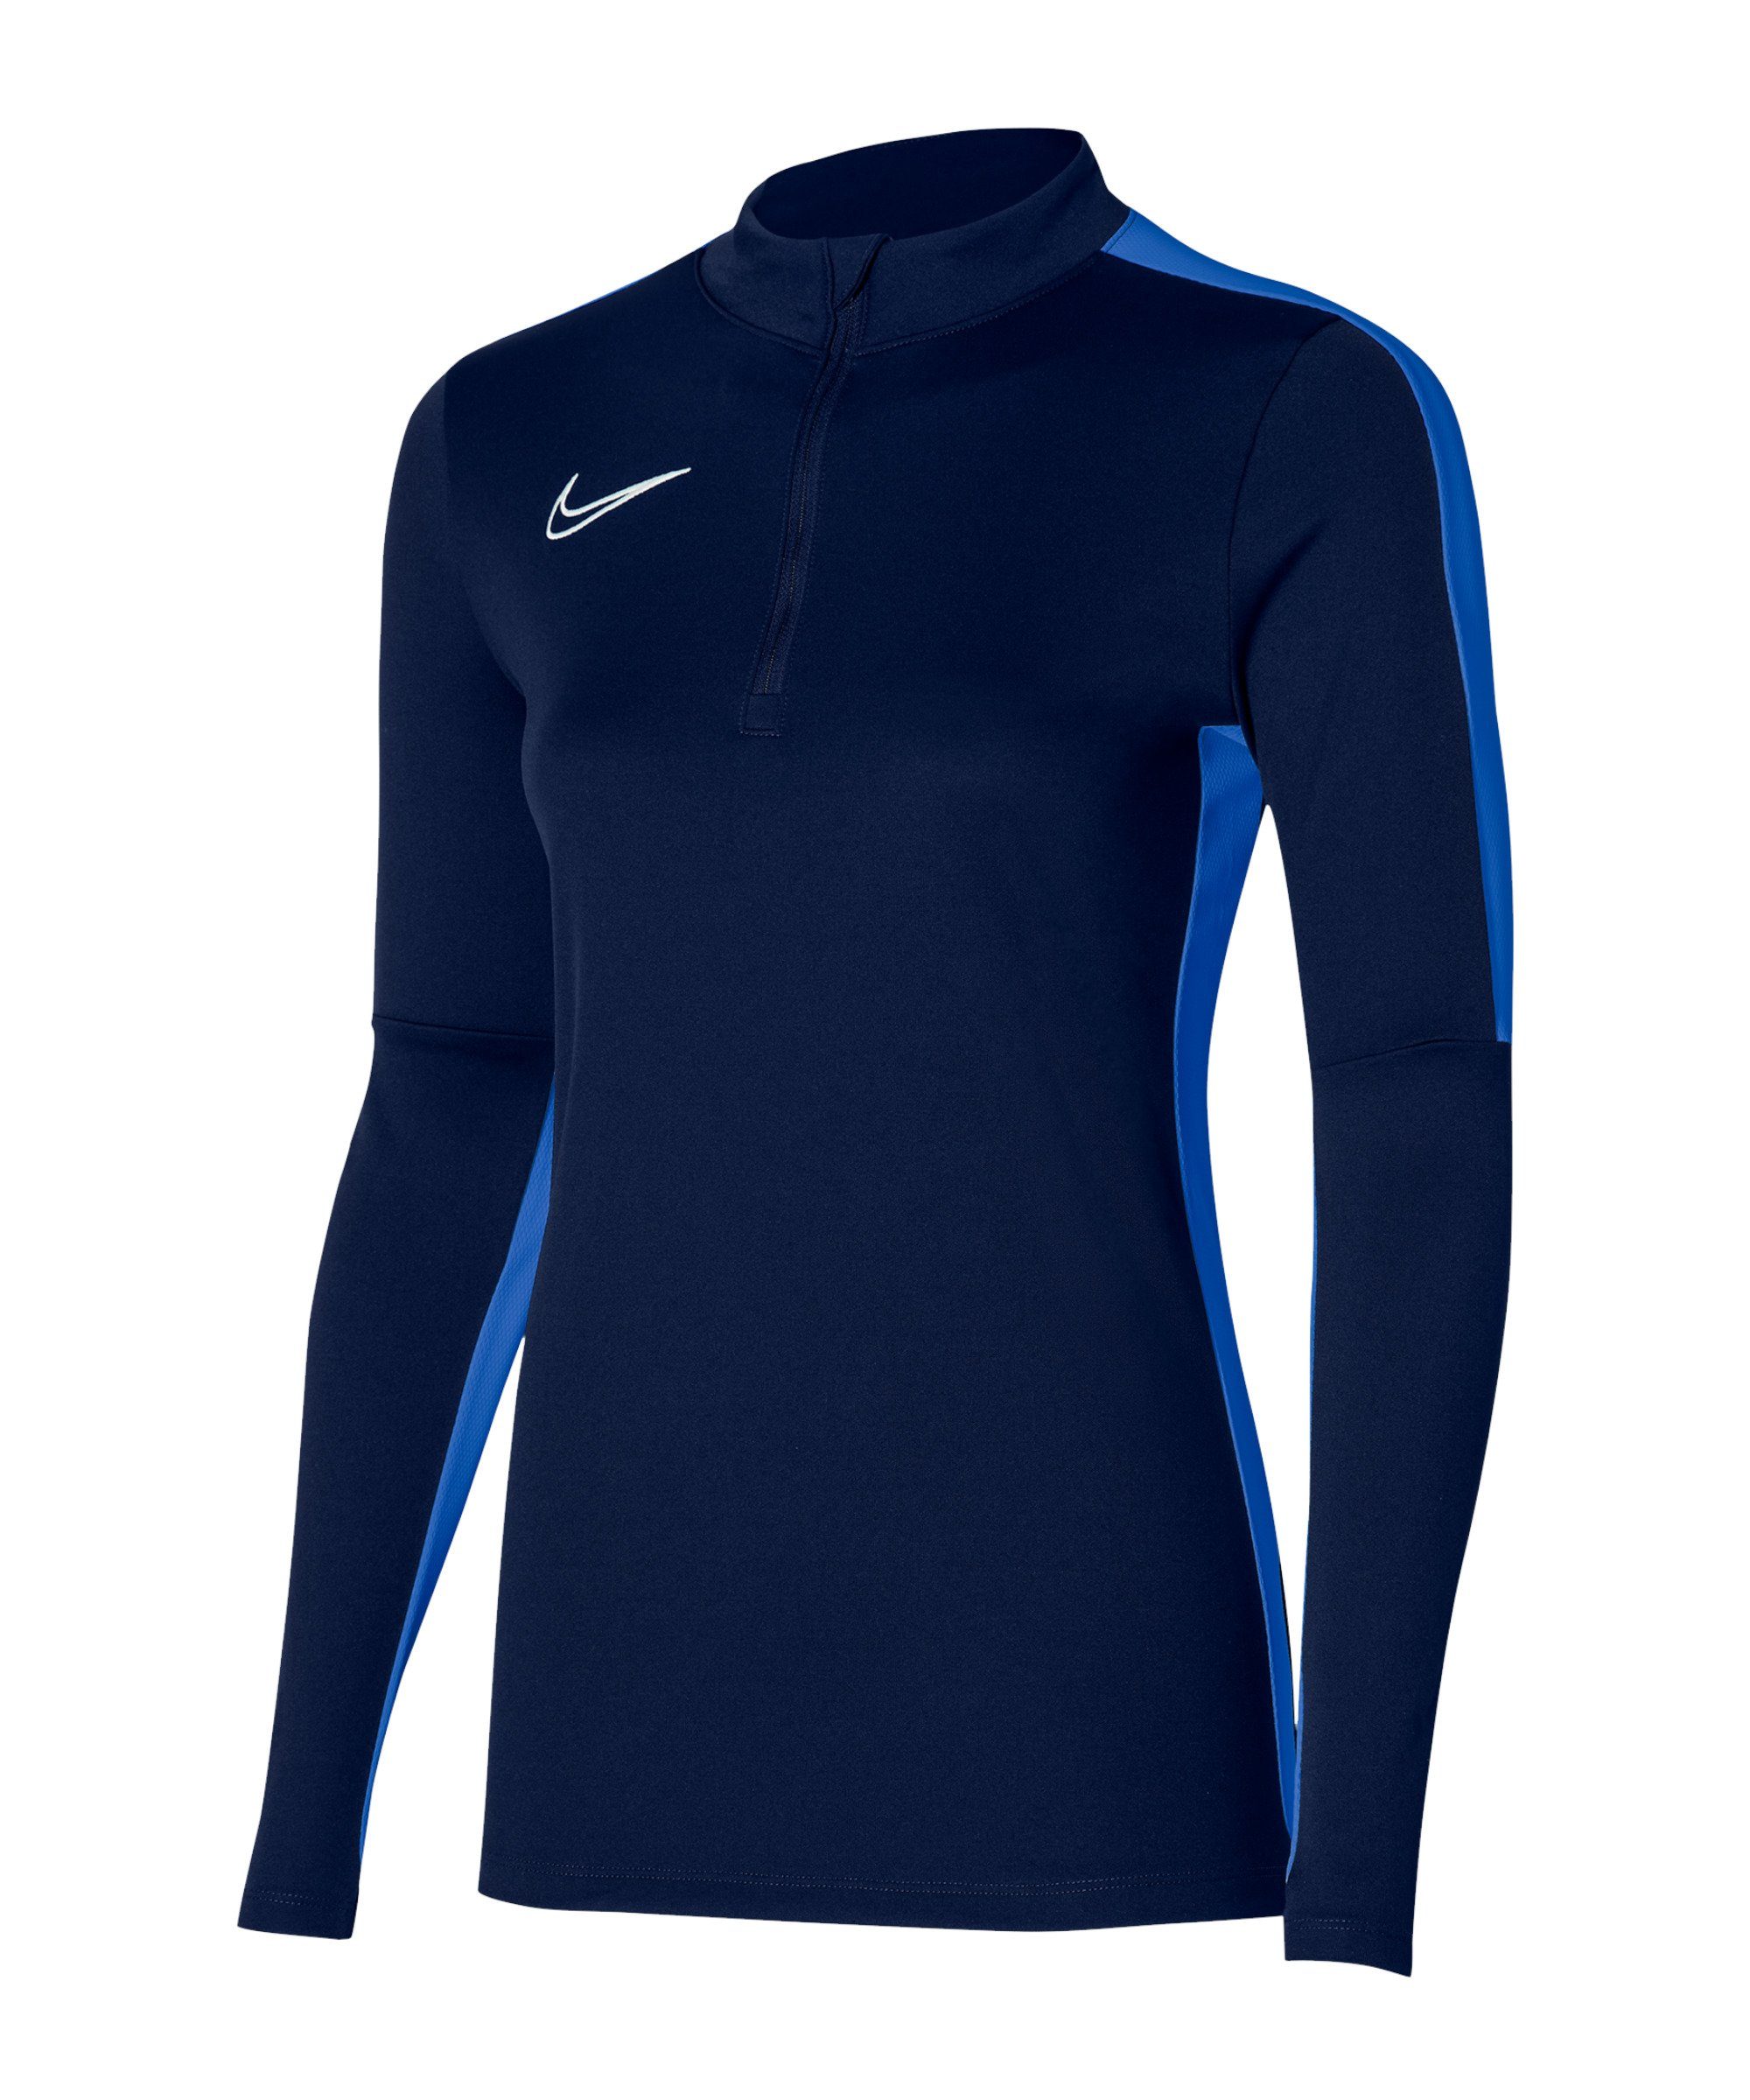 Top blaurotweiss 23 Nike Academy Damen Sweater Drill